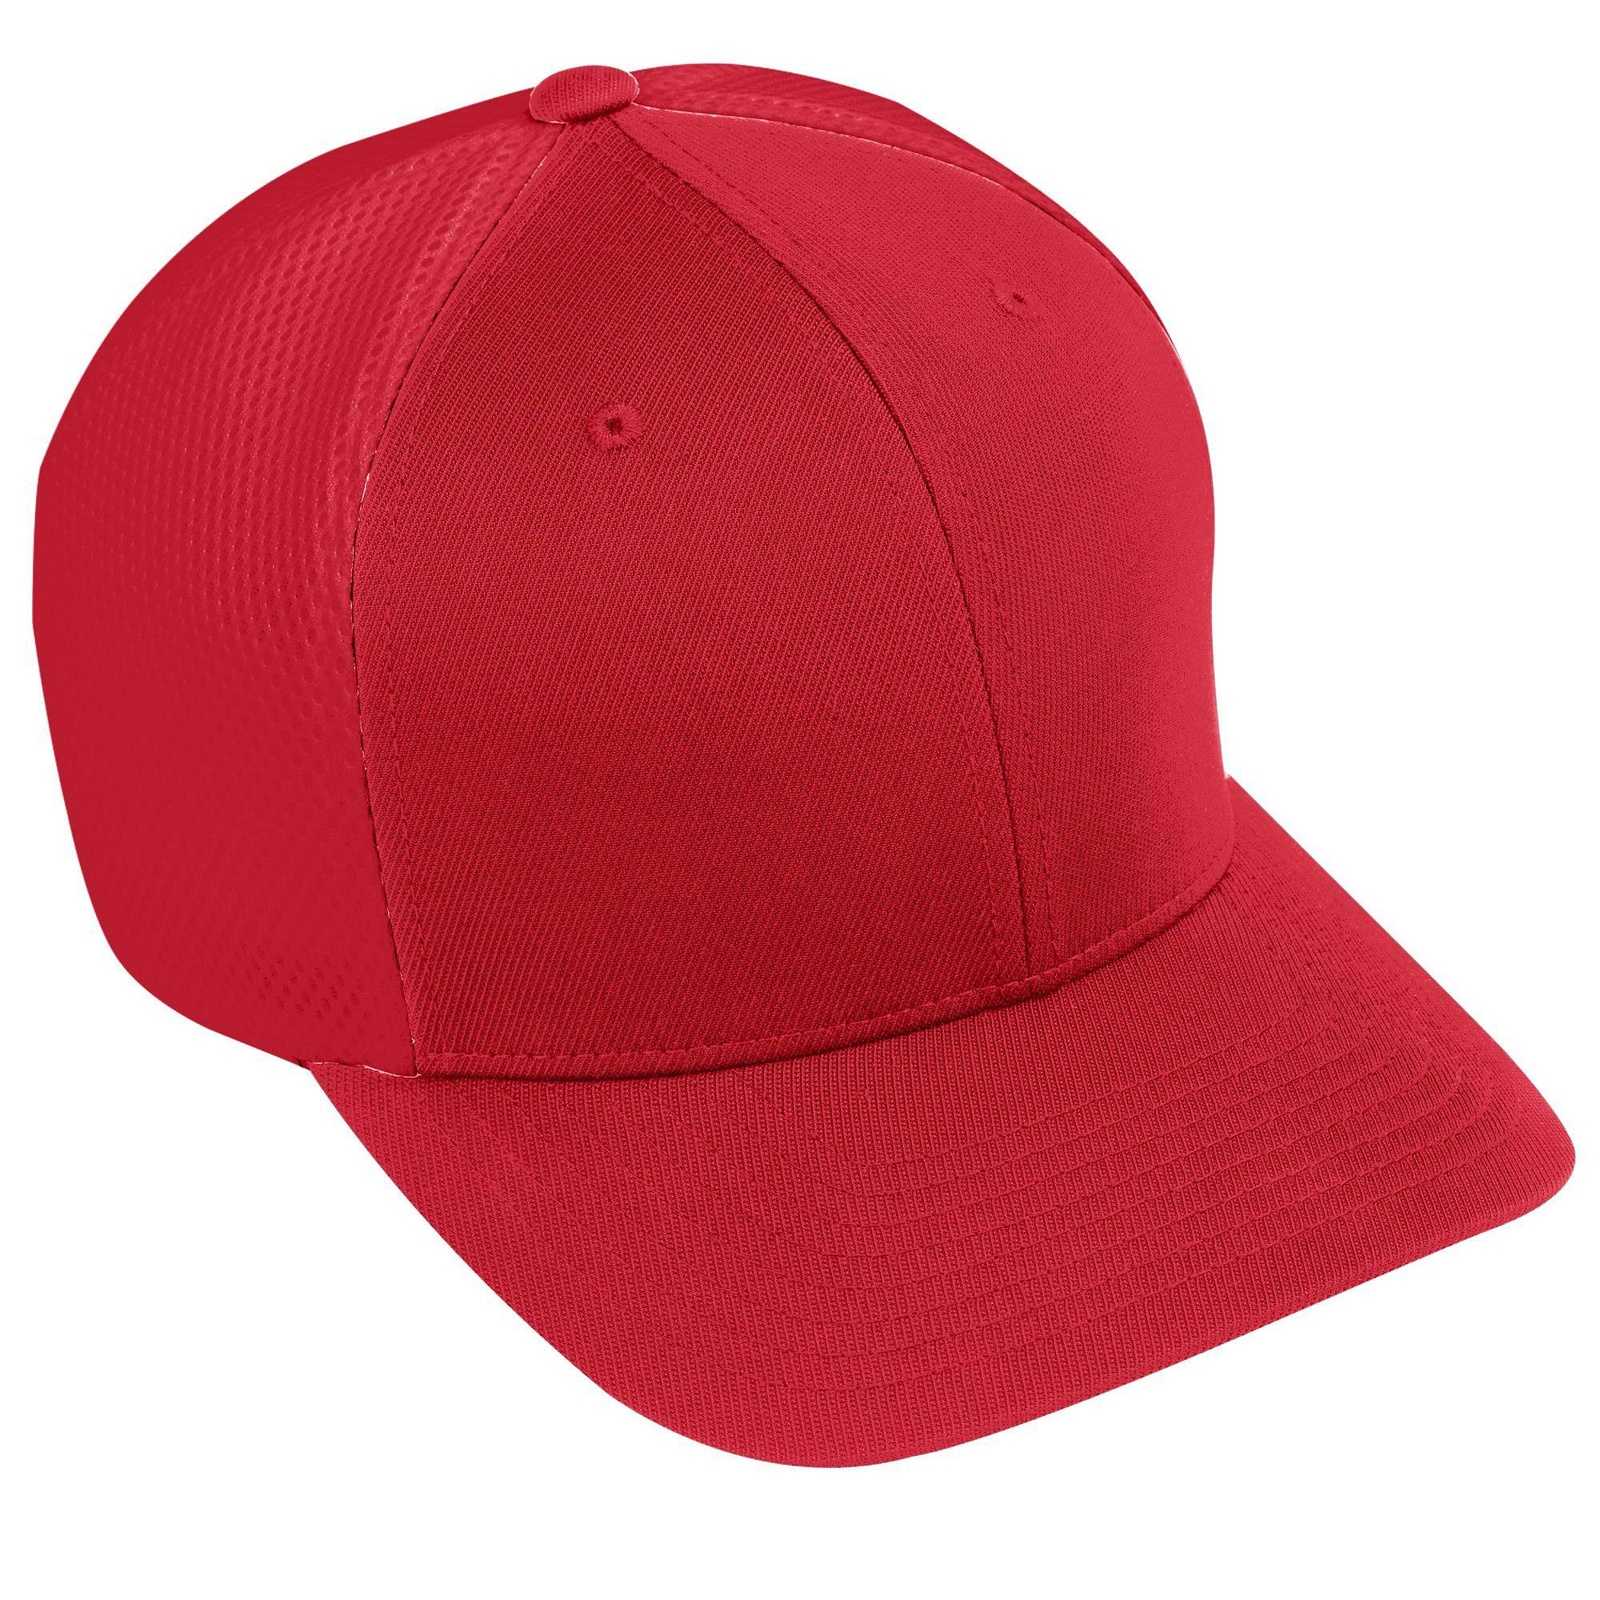 Augusta 6300 Flexfit Vapor Cap - Red - HIT a Double